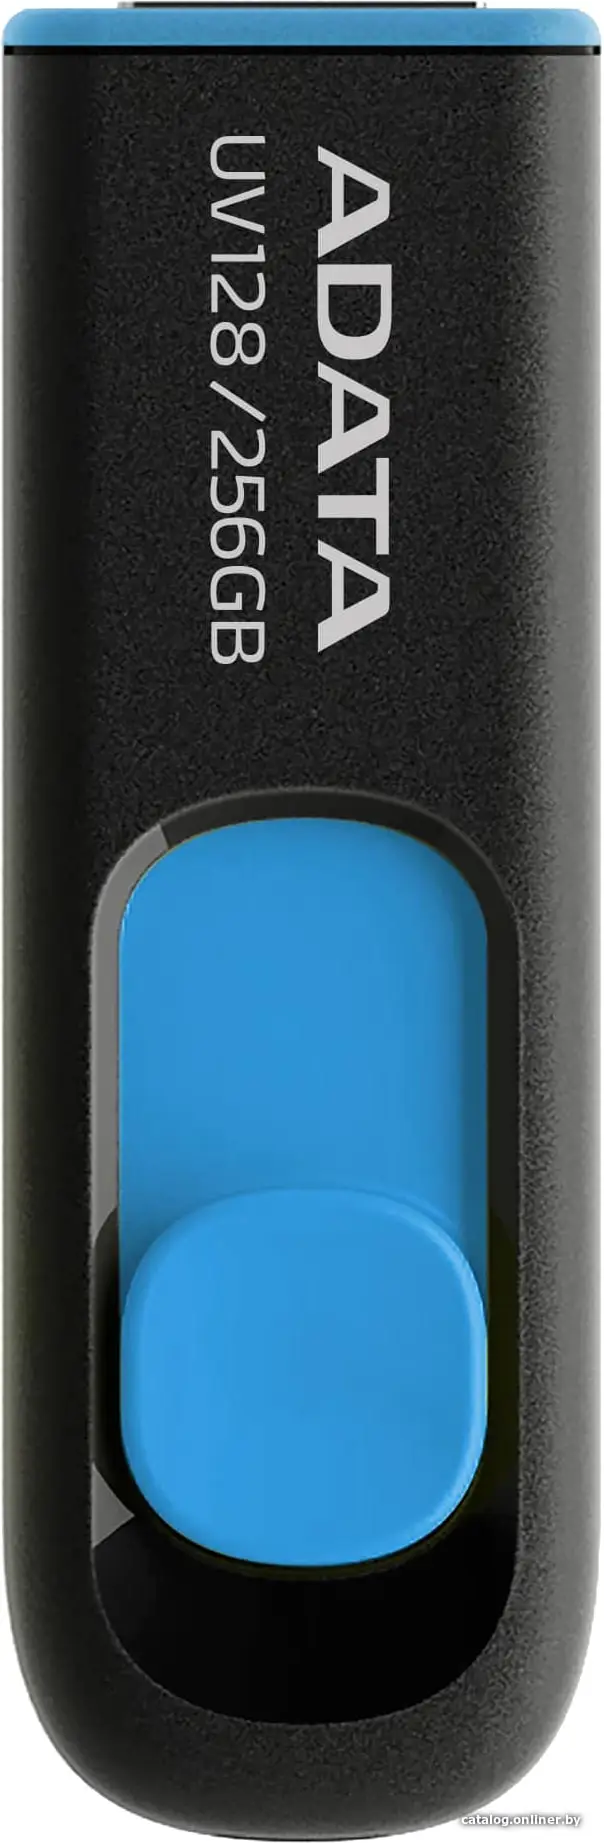 Купить USB 3.0 накопитель 256Gb ADATA DashDrive UV128 черный/синий, цена, опт и розница